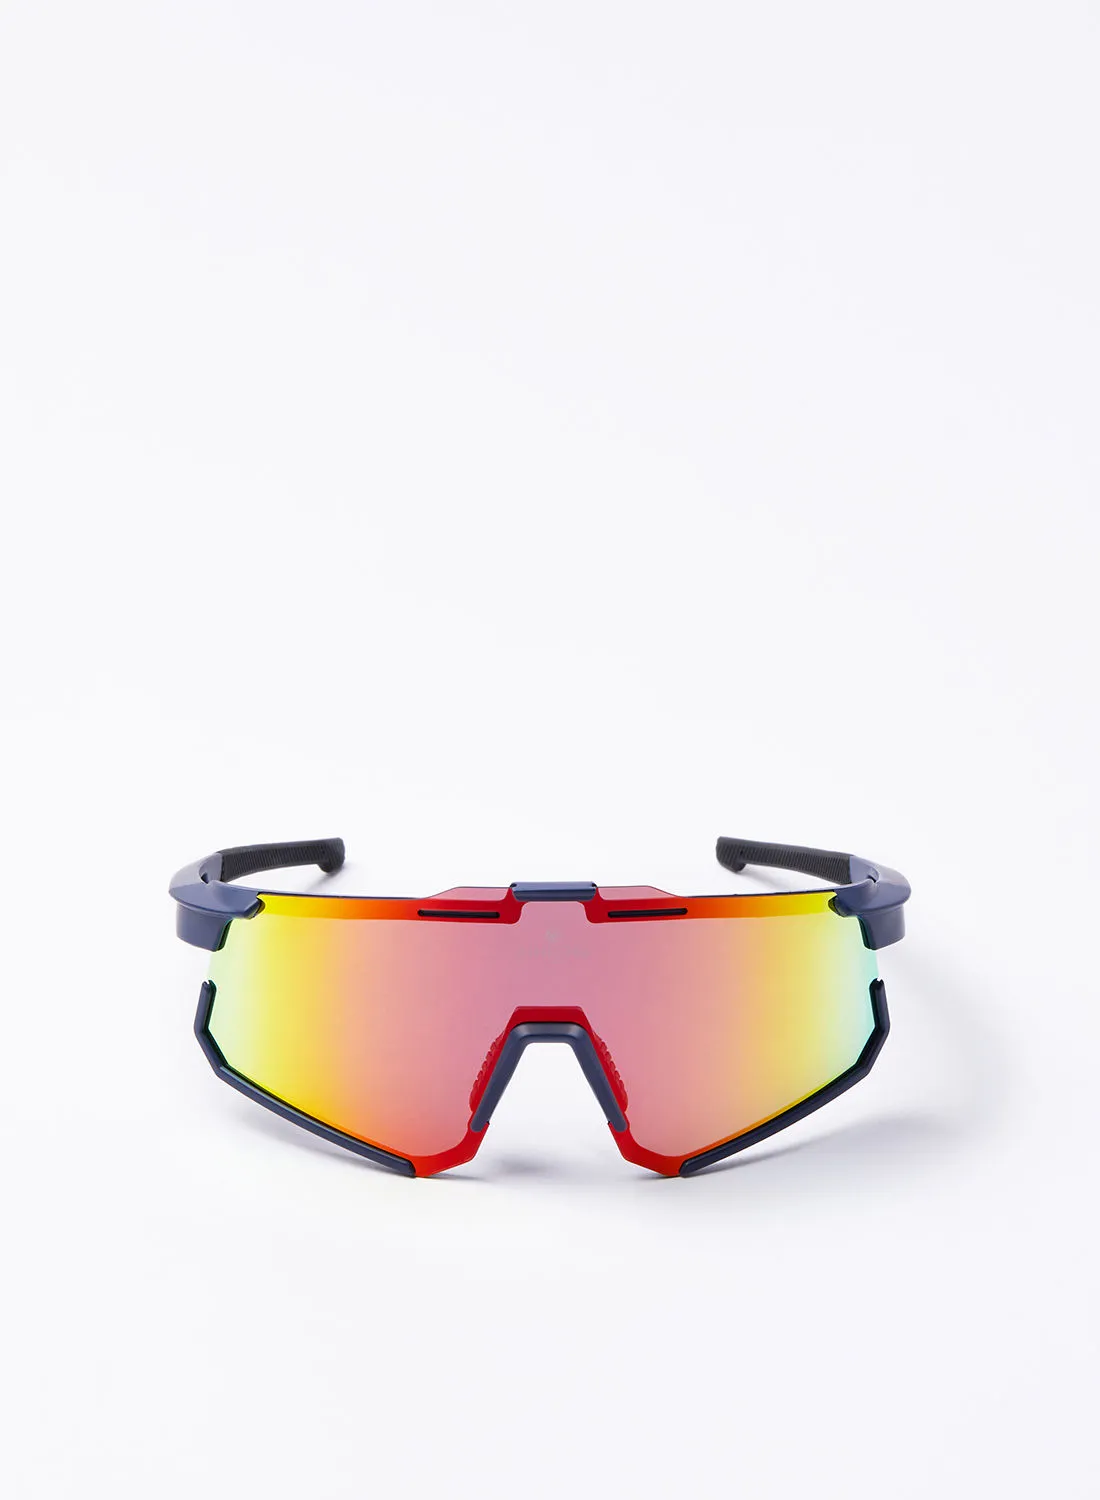 نظارة شمسية لركوب الدراجات من Athletiq - نادي أثليتيك جبل السوداء - إطار أزرق مع مرآة متعددة الطبقات باللون الأحمر